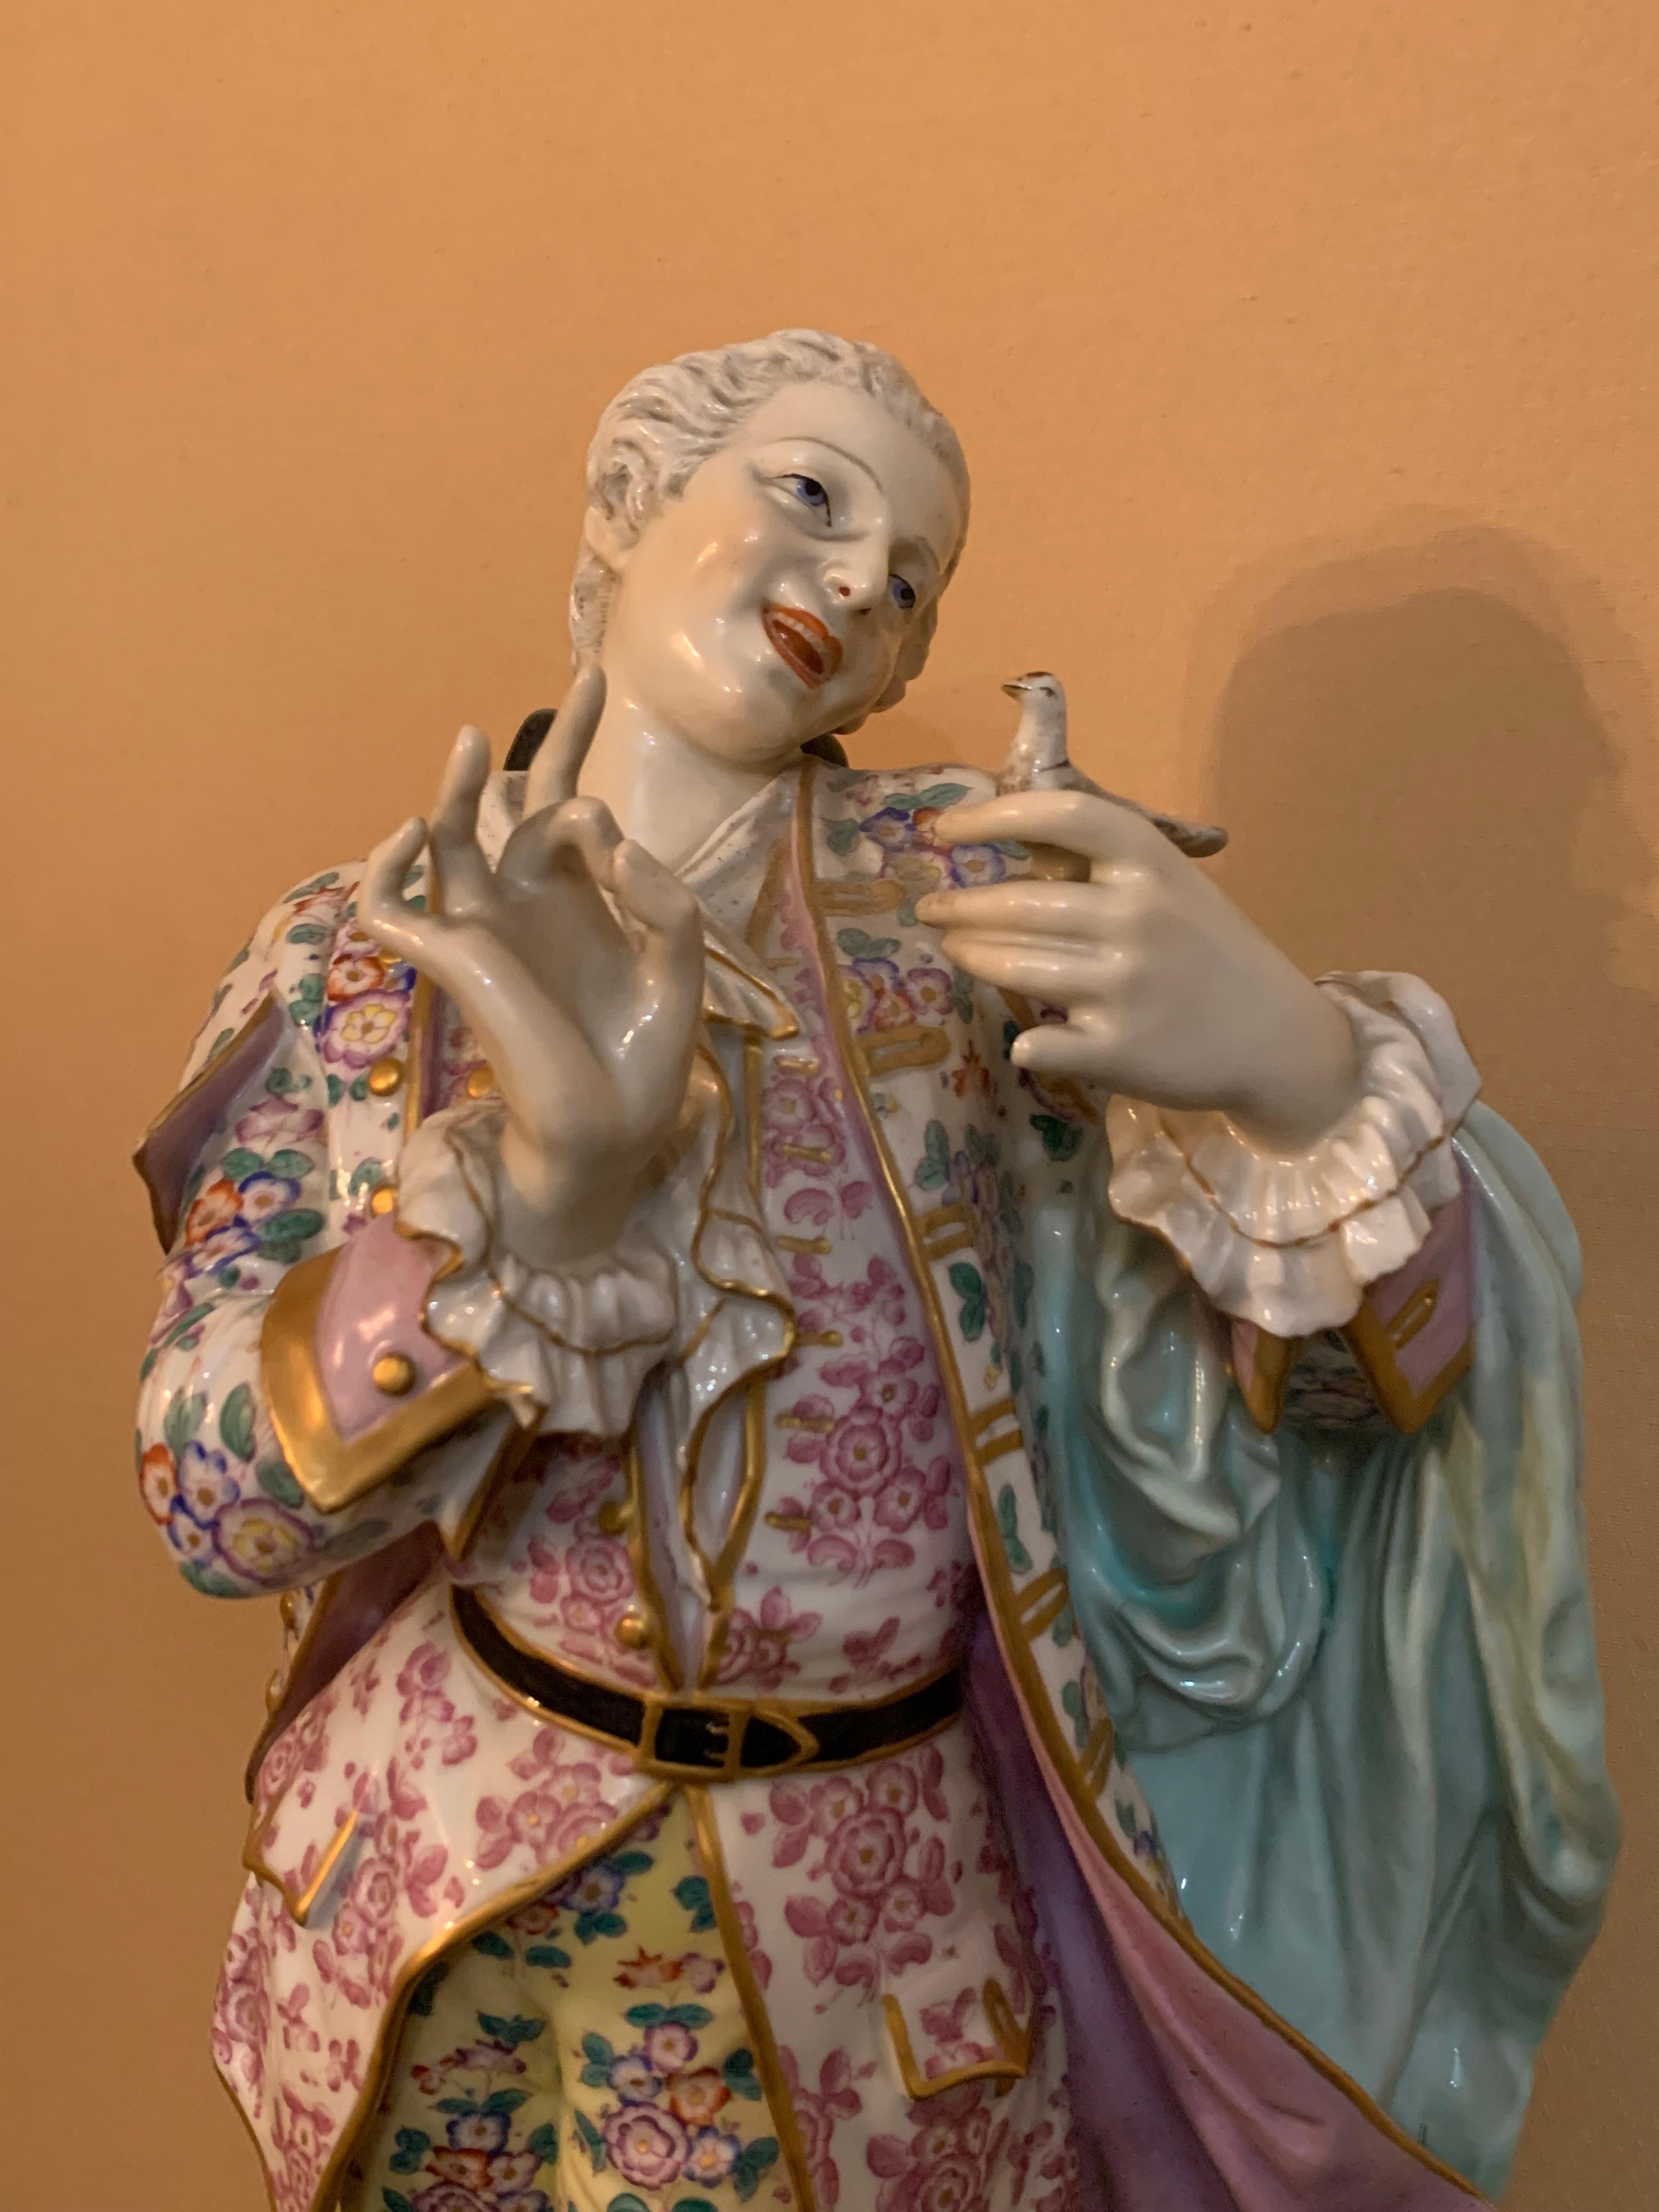 Ein schönes großes Paar Porzellanfiguren von Verliebten aus dem 19. Jahrhundert. Jede Figur ist wunderschön verziert und handbemalt. Der Herr trägt einen schönen Anzug mit leuchtenden Farben, die Frau trägt ein schönes Kleid mit ebenfalls